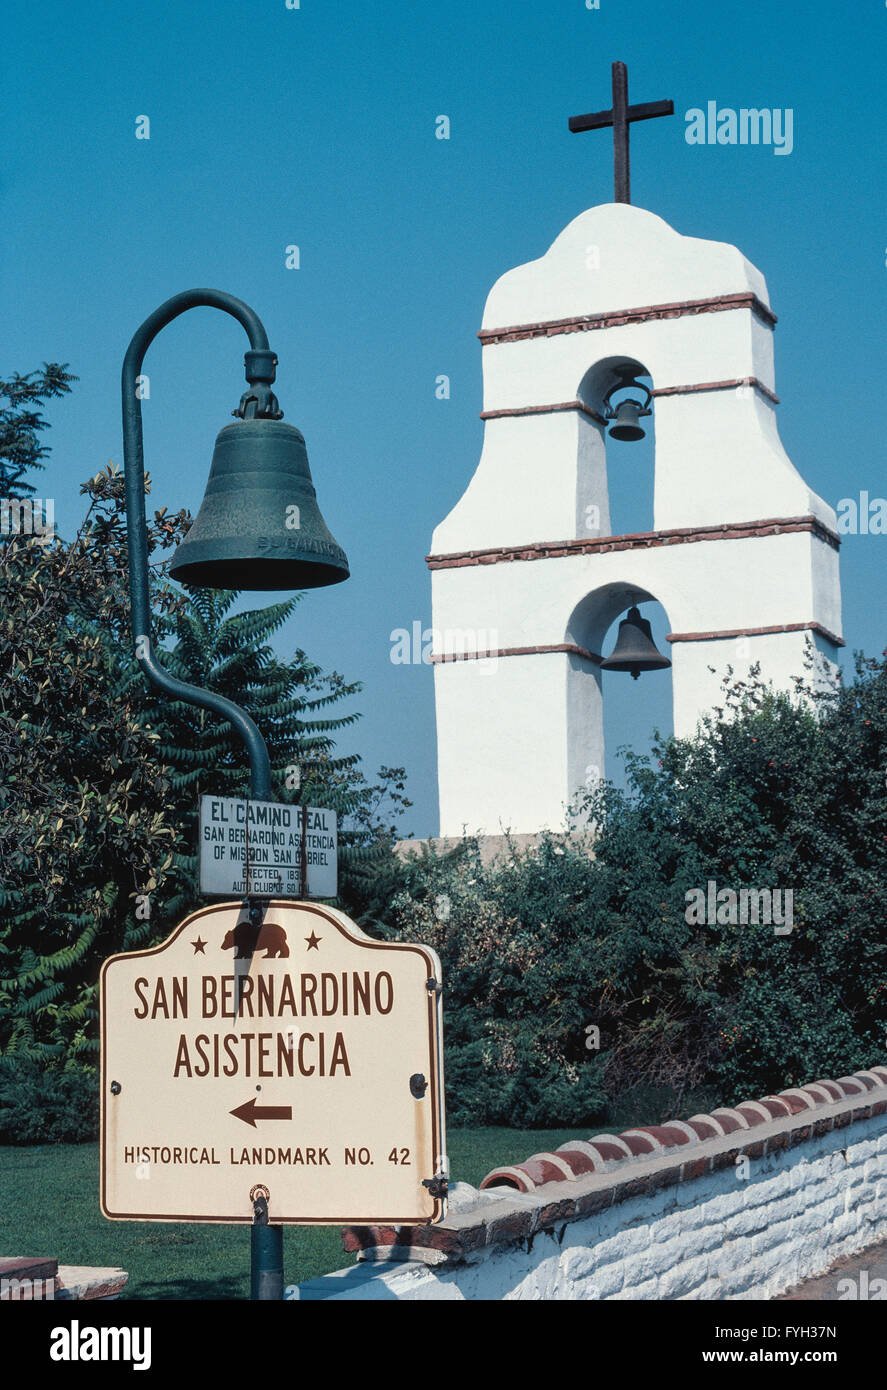 Ein Glockenturm markiert den Ort des rekonstruierten 1830 historische Gebäude der Rancho San Bernardino, ein Vorposten der spanischen Mission San Gabriel für seine Rinder weiden Aktivitäten im heutigen Redlands, Kalifornien, USA. Genannt der Asistencia fälschlicherweise auf Spanisch, Estancia (Rinderfarm) wurde vier Jahre später durch die Mission aufgegeben und verfiel die Adobe-Gebäude. Eine modernisierte Neuschöpfung im Jahr 1937 für Besucher geöffnet. Heutige Asistencia ist ein historisches Wahrzeichen von Kalifornien und in der Nähe einer Gusseisen-Glocke, die 21 spanischen Missionen nach oben und unten den Staat El Camino Real (The Royal Road) markiert. Stockfoto